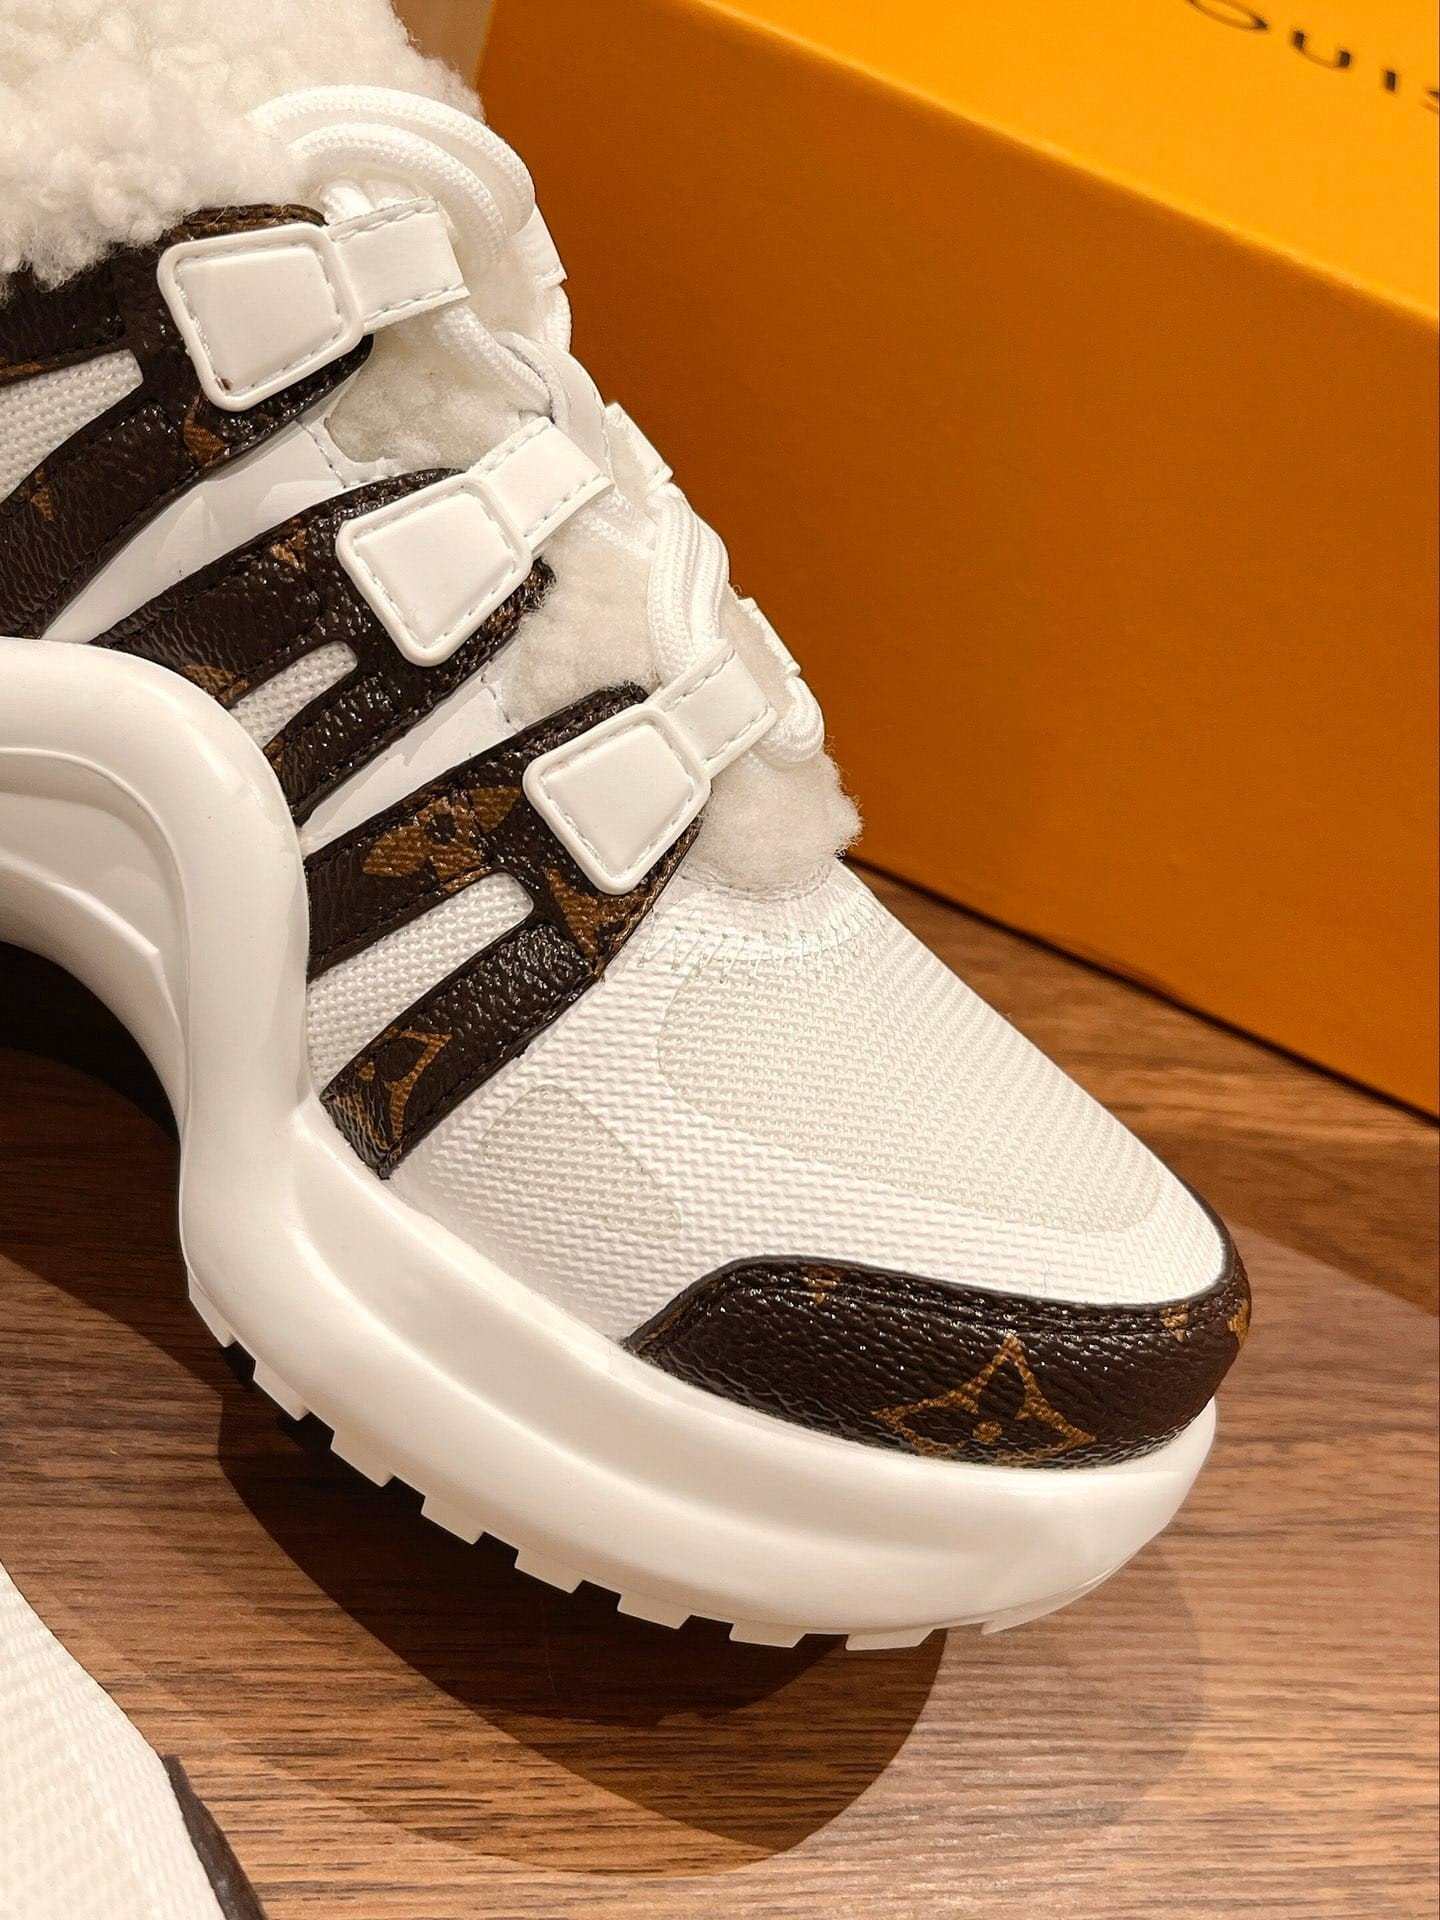 Giày  Louis Vuitton Archlight Siêu Cấp Lót Lông Size 35-40